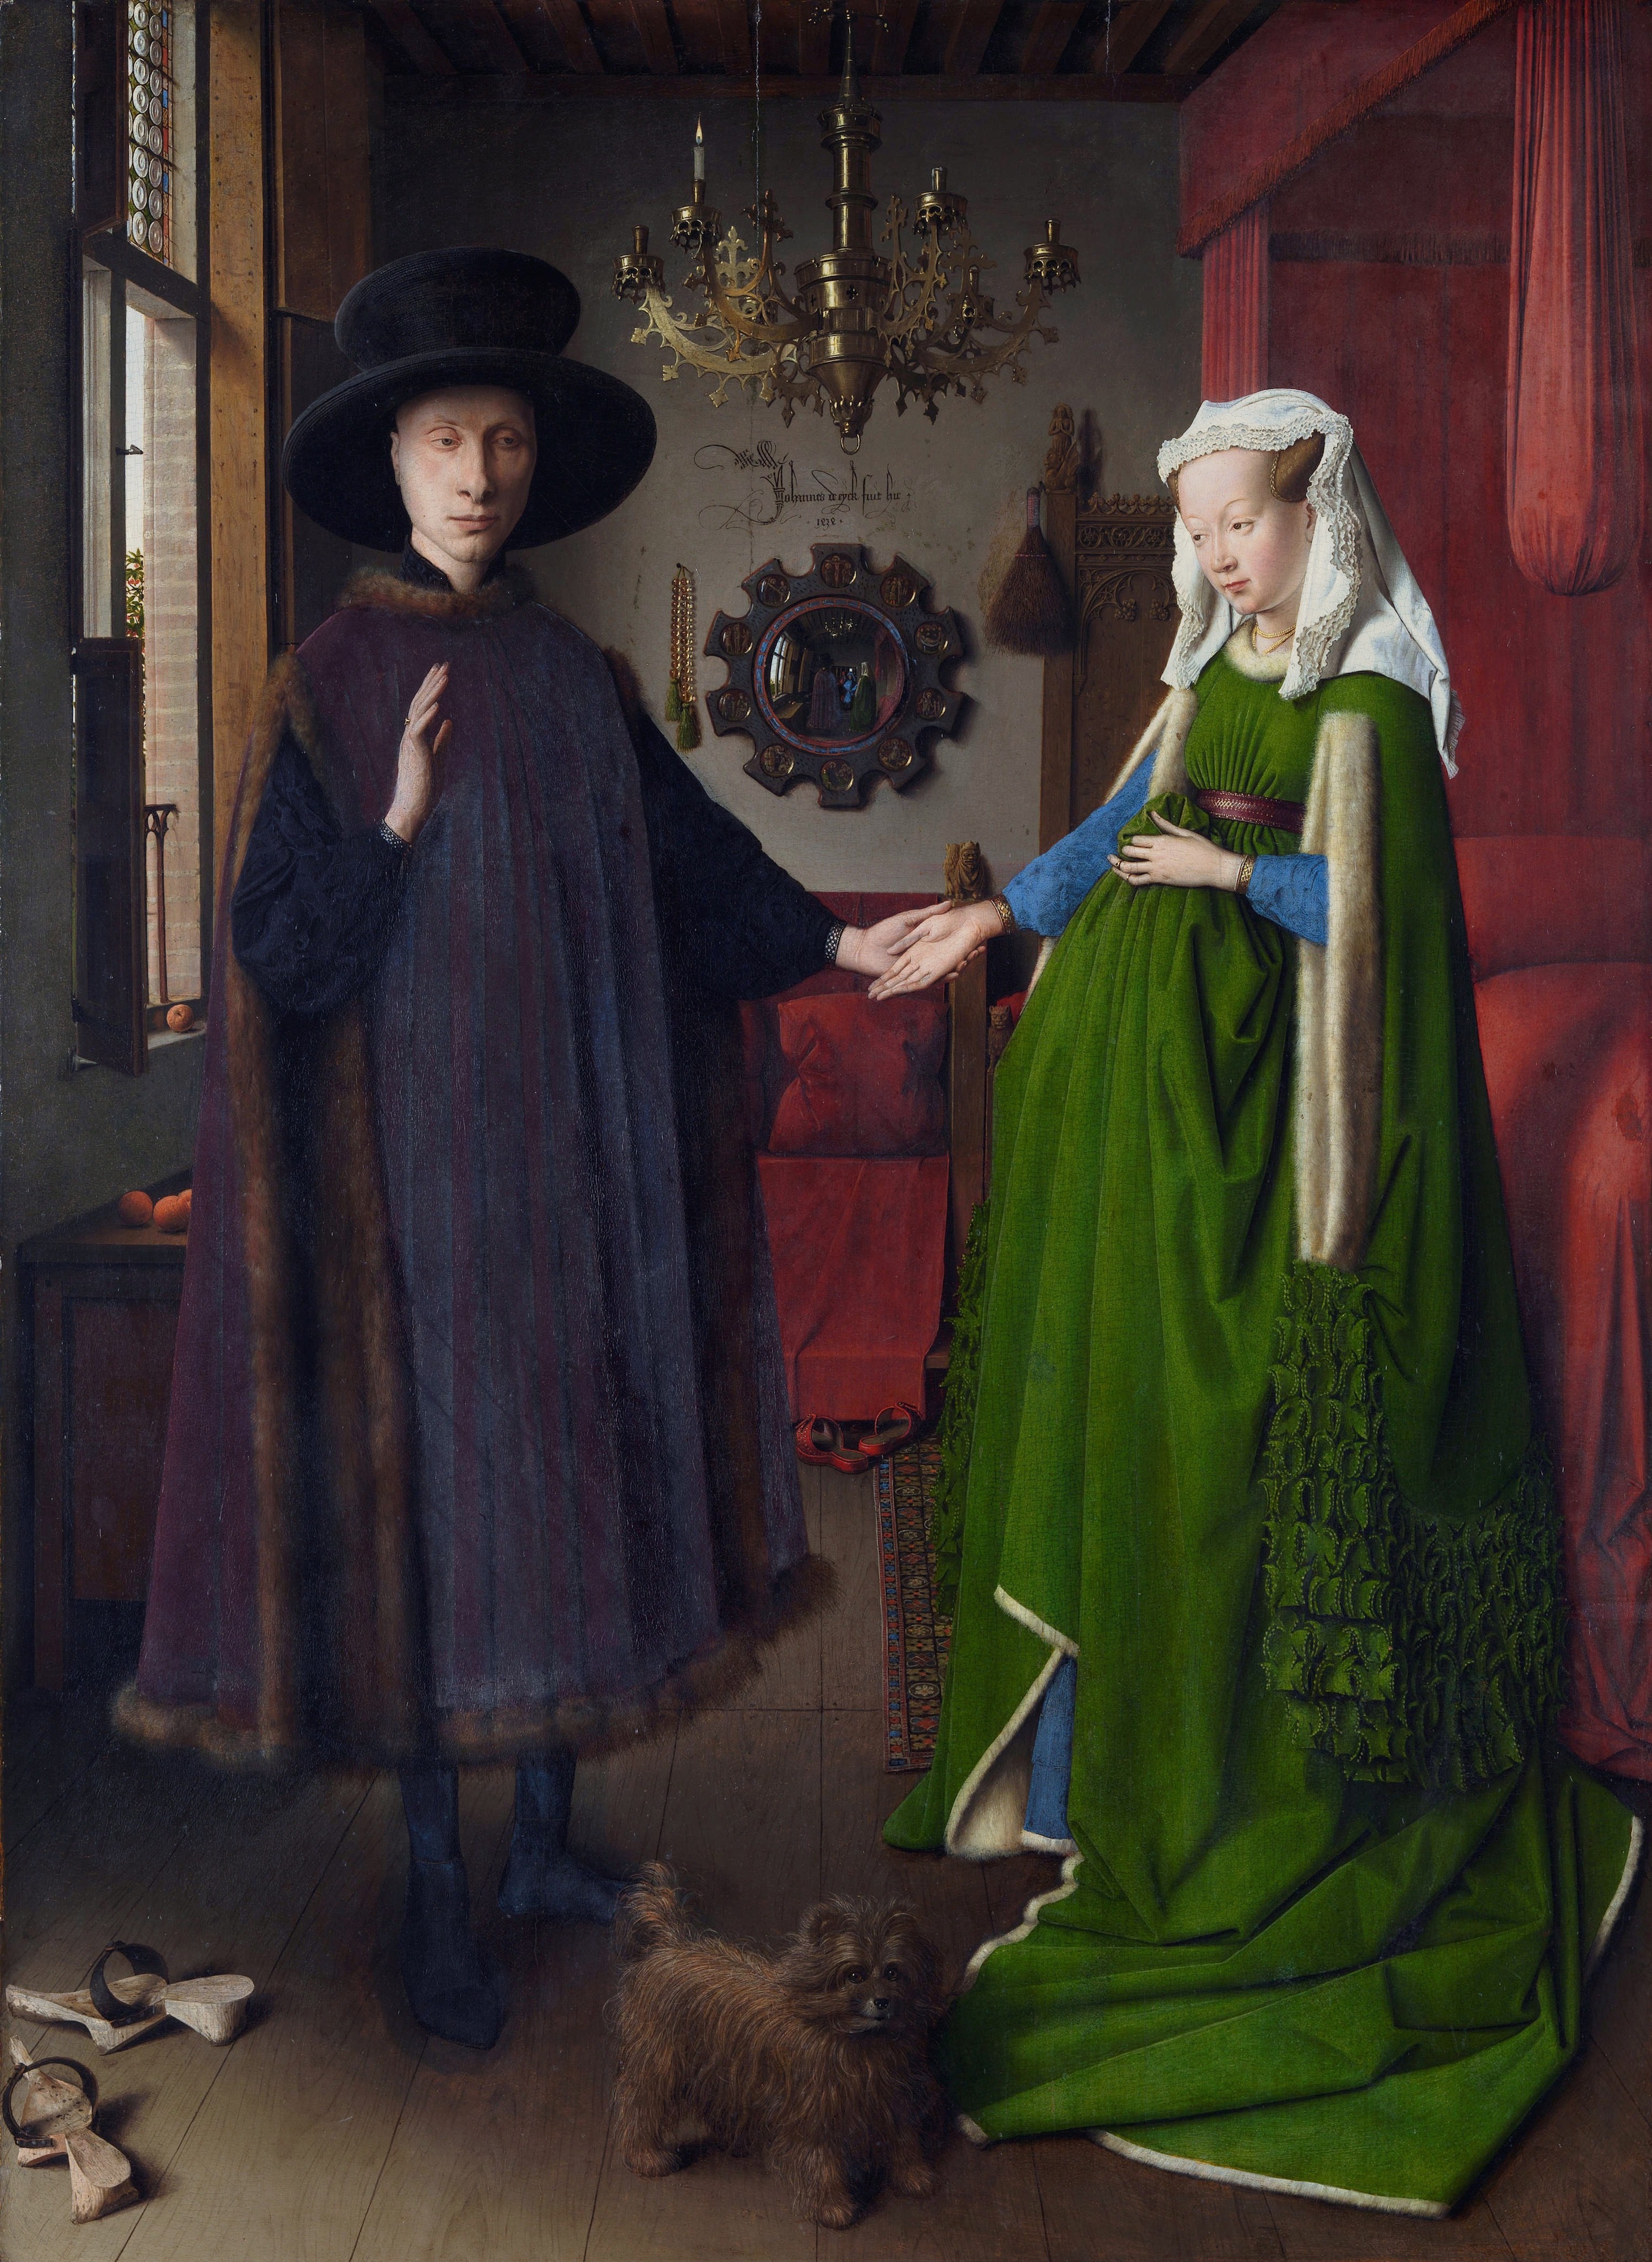 Giovanni Arnolfini et son épouse Giovanna Cenami by Jan van Eyck - 1434 - 82 × 59.5 cm 